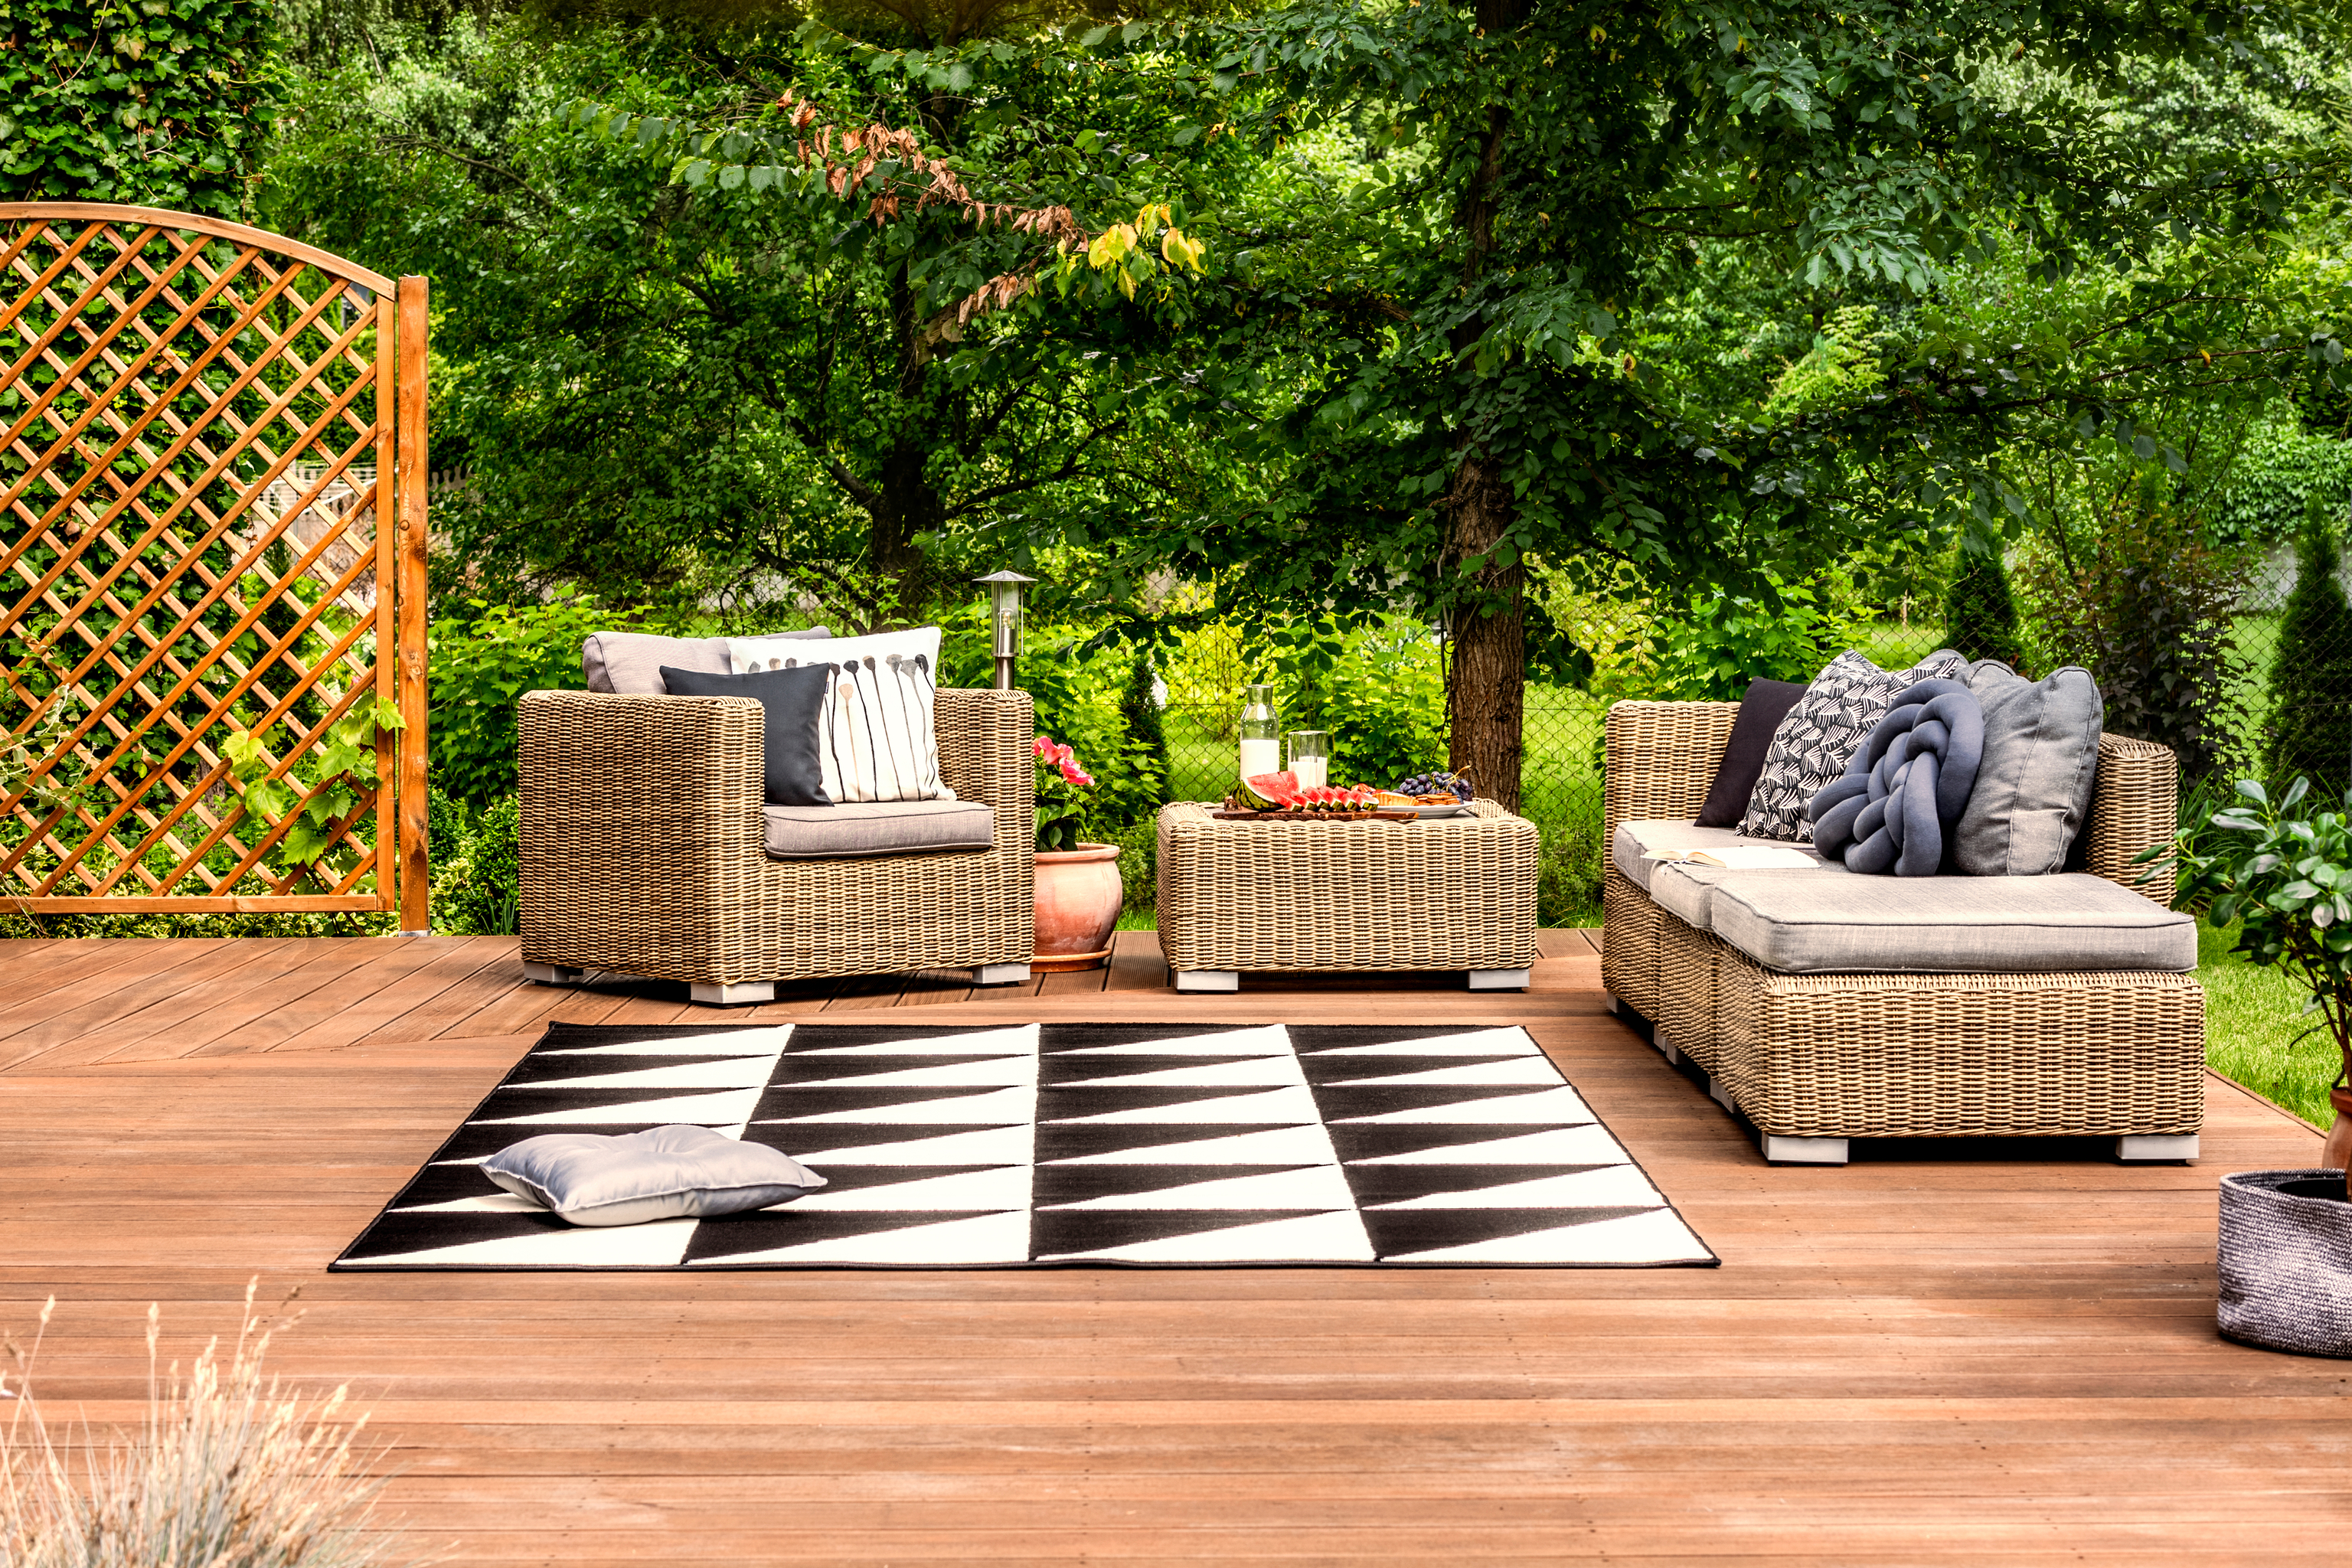 Las alfombras son una buena idea para redondear la decoracin de tu terraza.